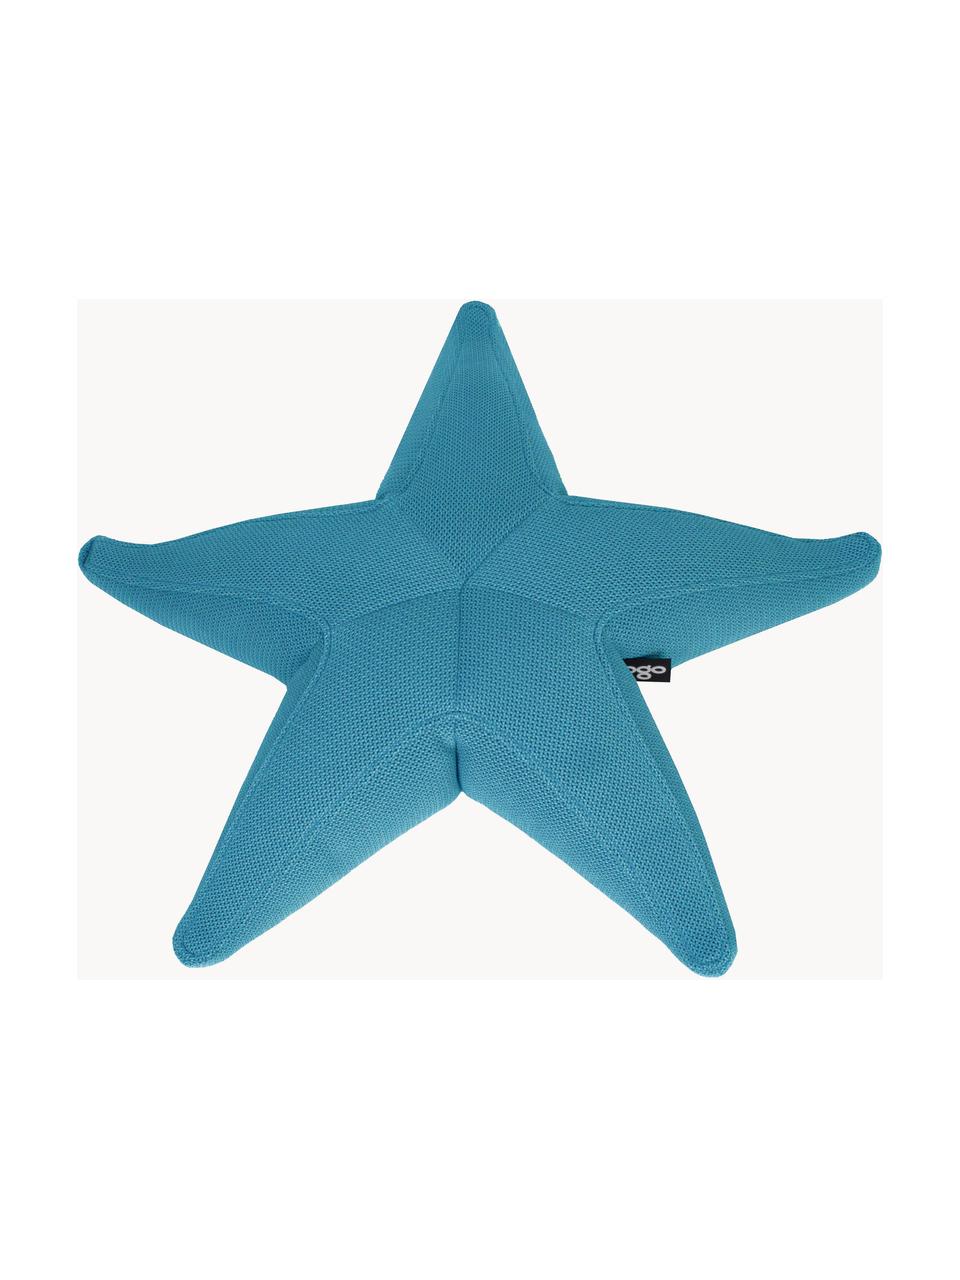 Ręcznie wykonany zewnętrzny worek do siedzenia Starfish, Tapicerka: 70% PAN + 30% PES, wodood, Petrol, S 83 x L 83 cm